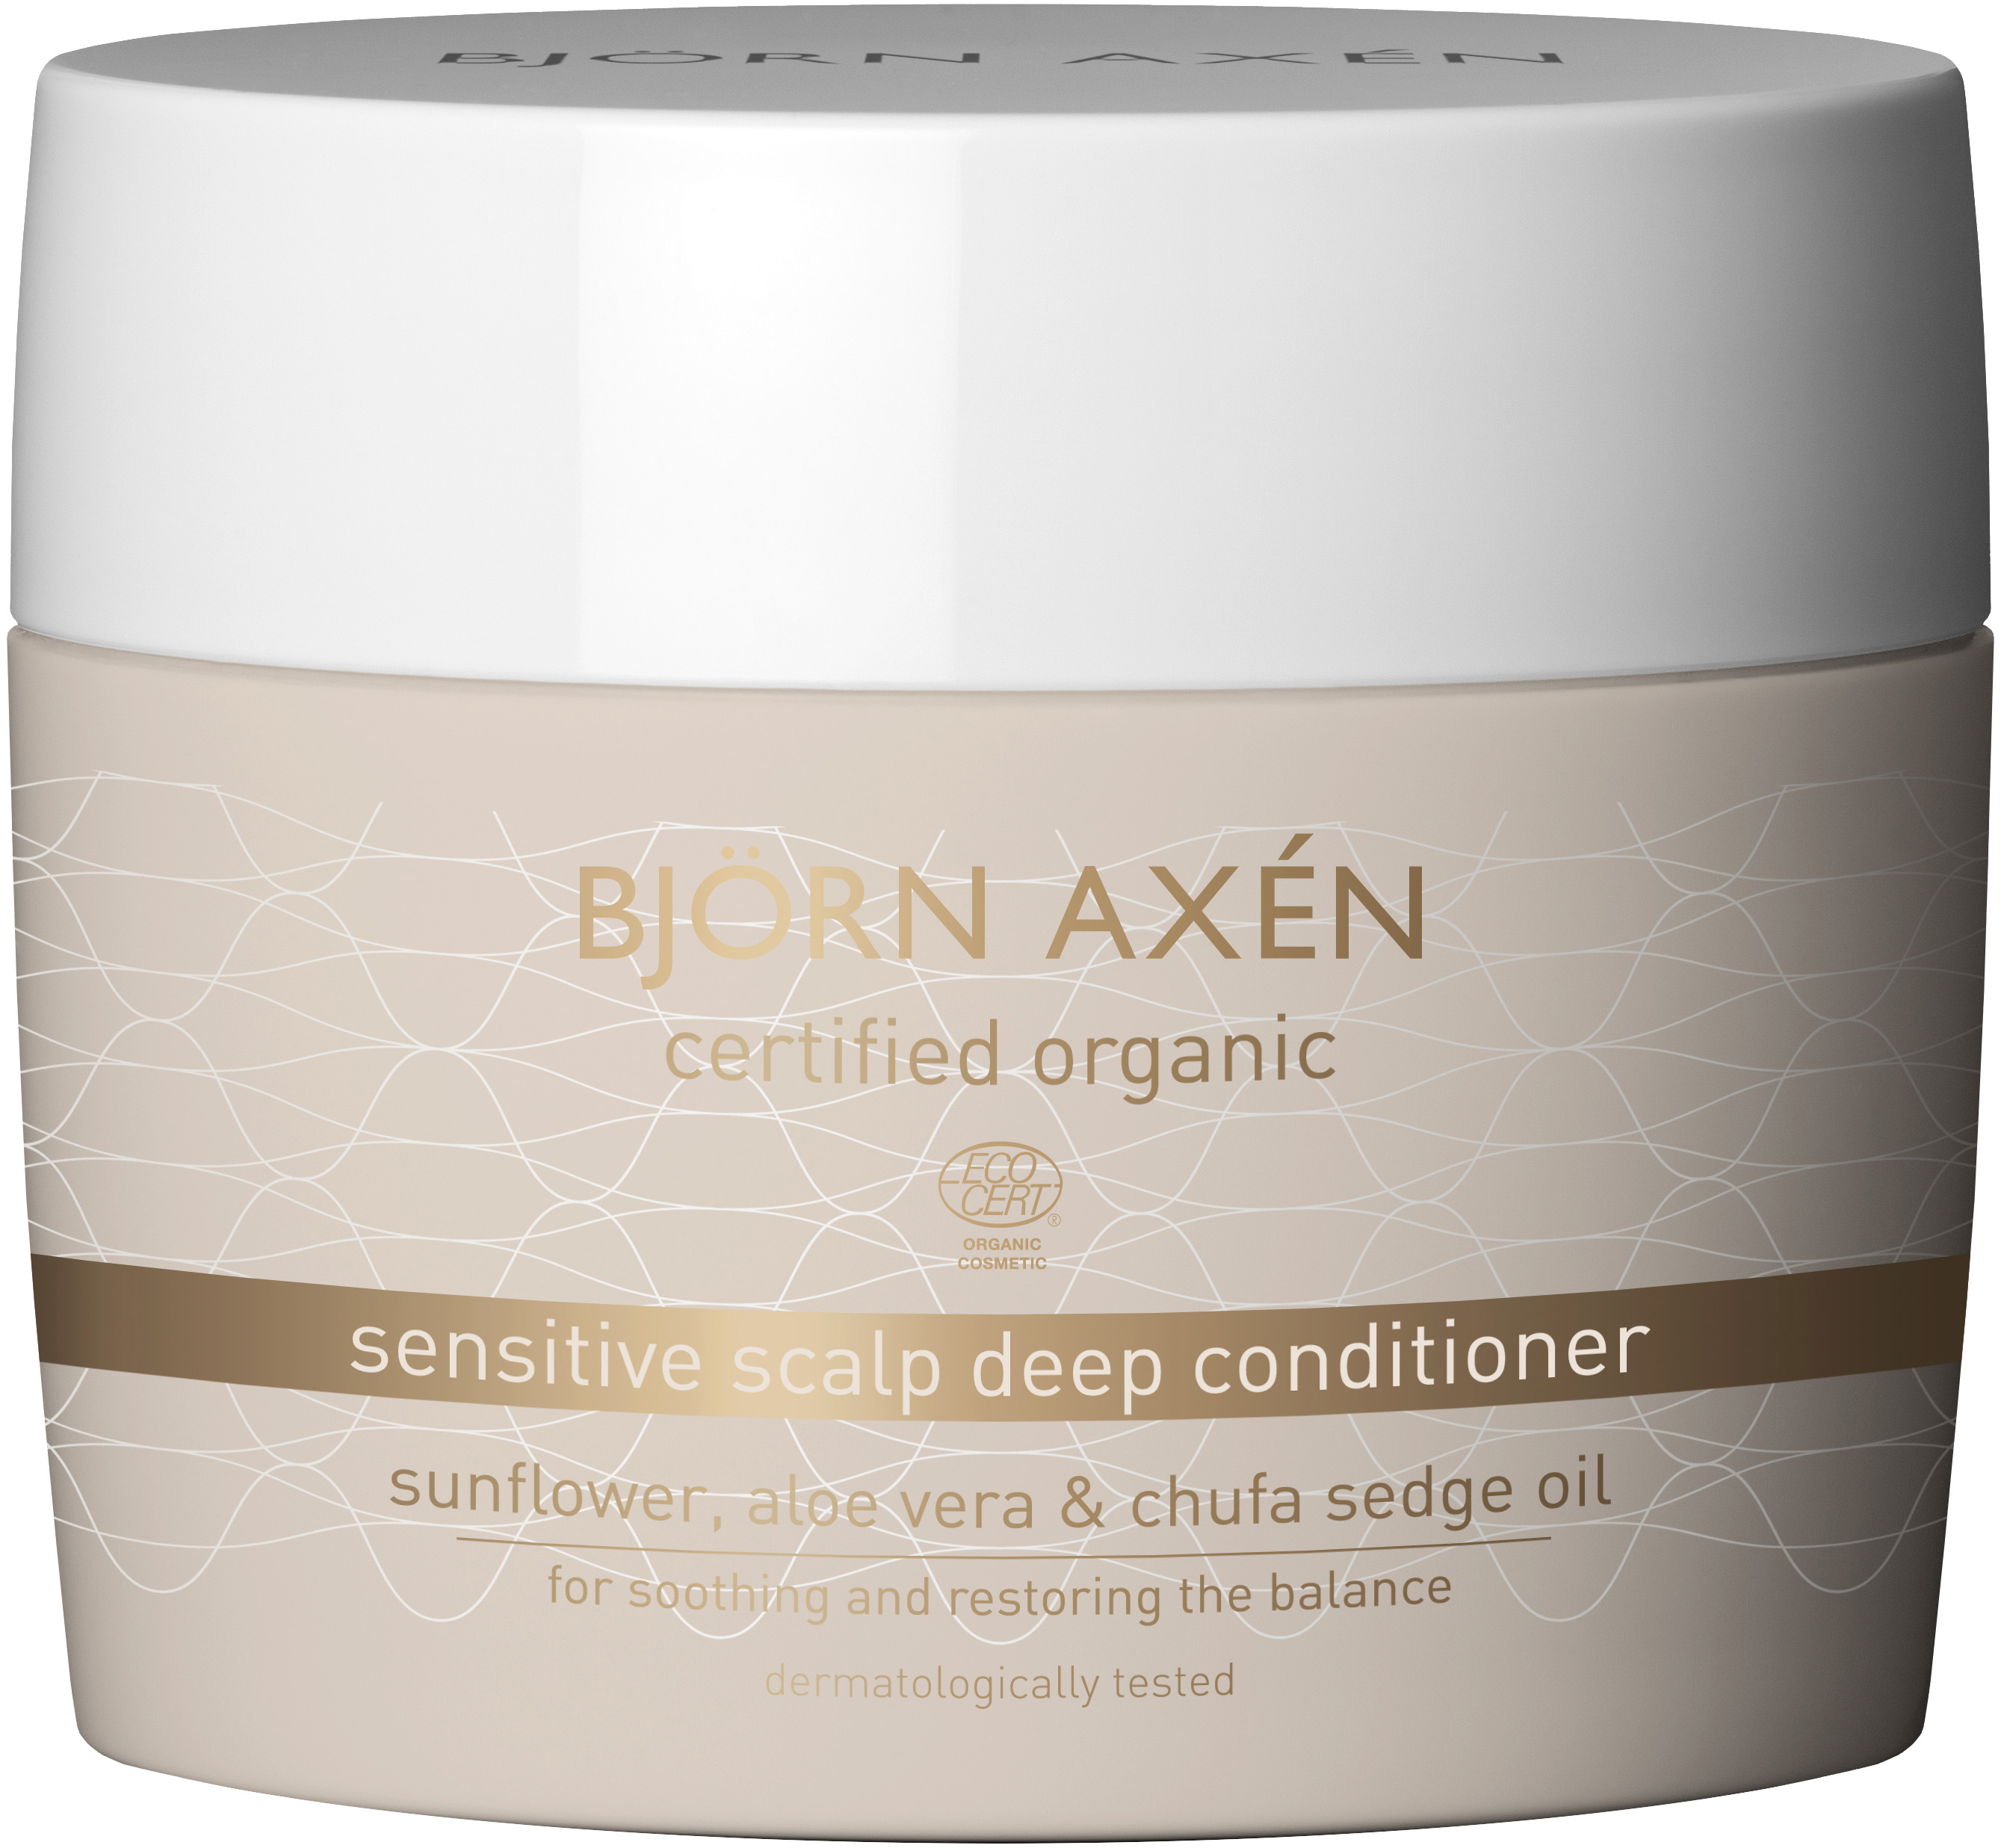 Björn Axen Certified Organic Sensitive Scalp Deep Conditioner